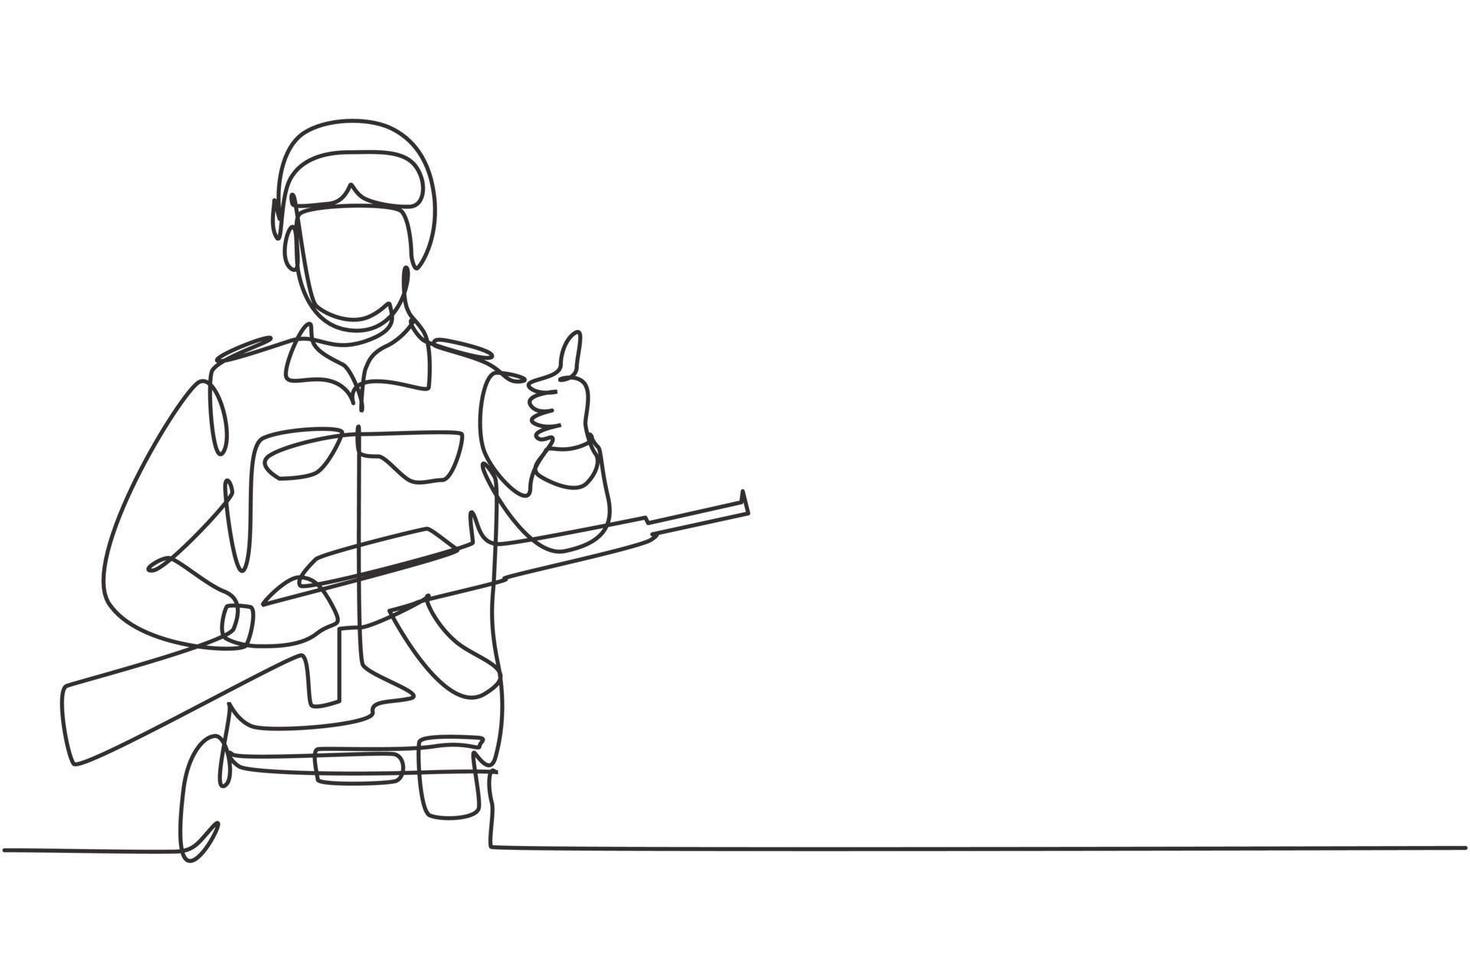 soldados de dibujo continuo de una línea con armas, uniformes completos, gestos de pulgar hacia arriba están listos para defender el país en el campo de batalla contra el enemigo. Ilustración gráfica de vector de diseño de dibujo de una sola línea.